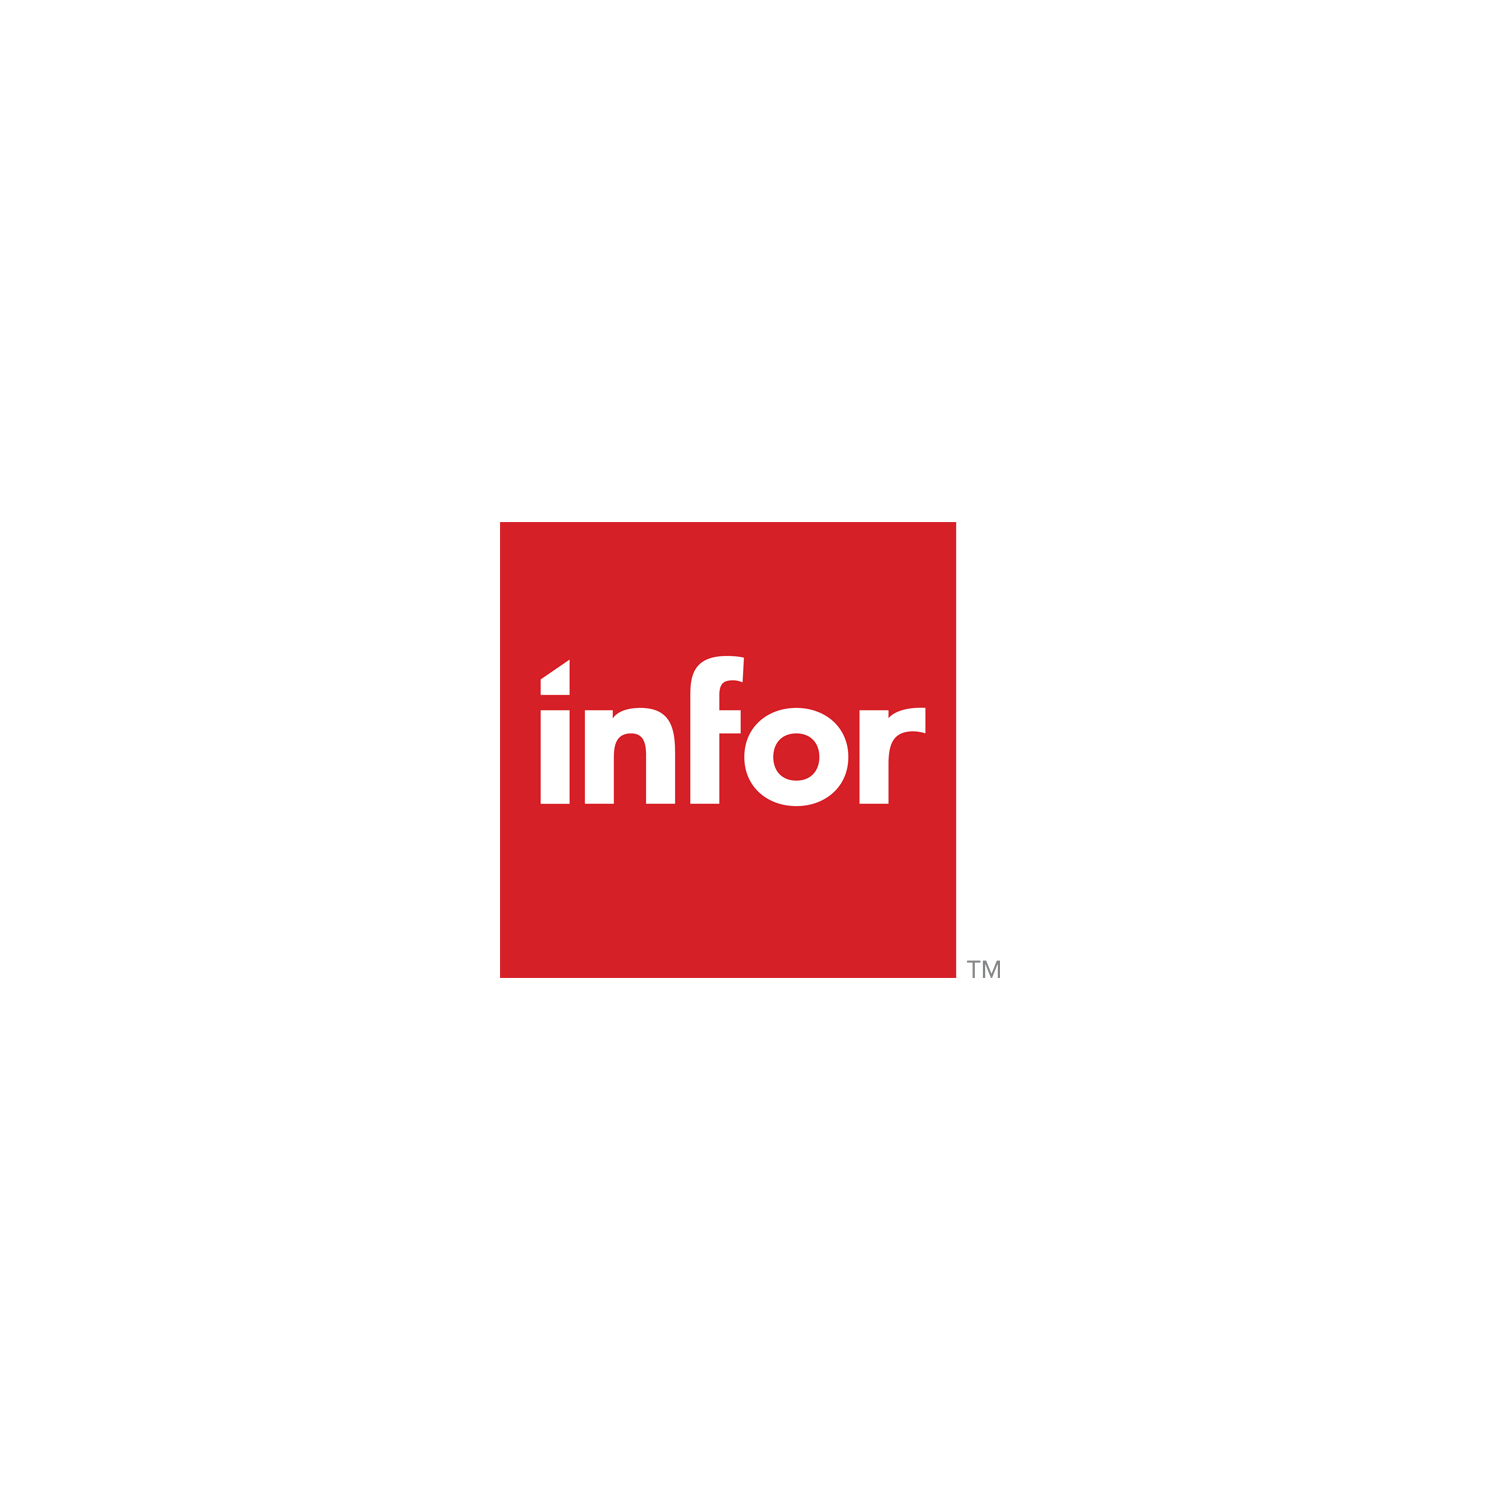 The_Infor_logo